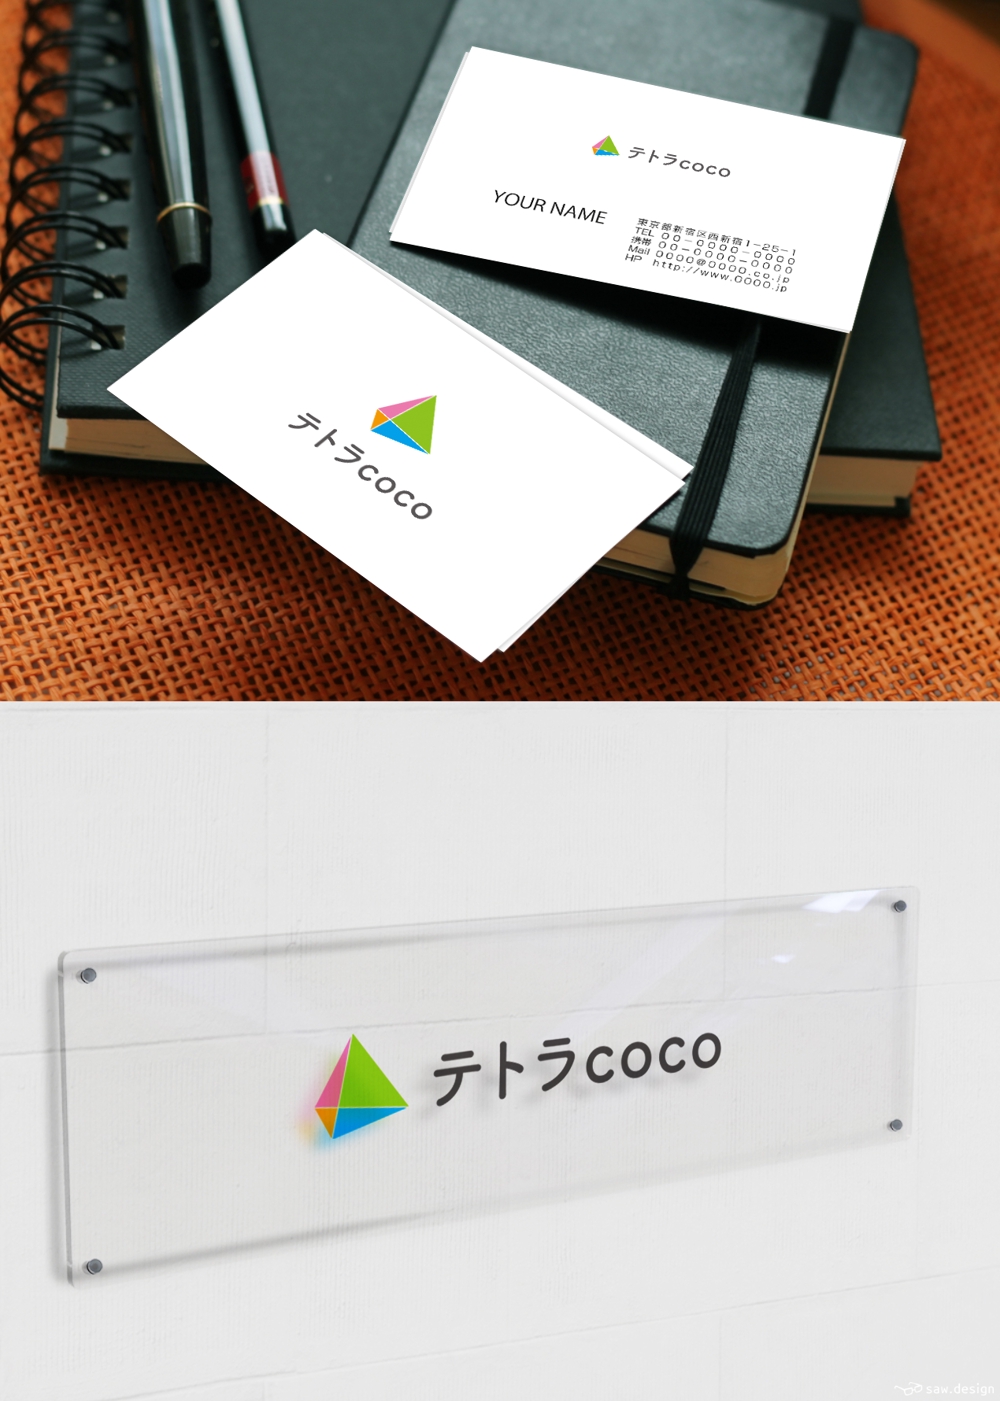 学習支援・放課後等デイサービスの「テトラcoco」のロゴタイプとロゴイメージ